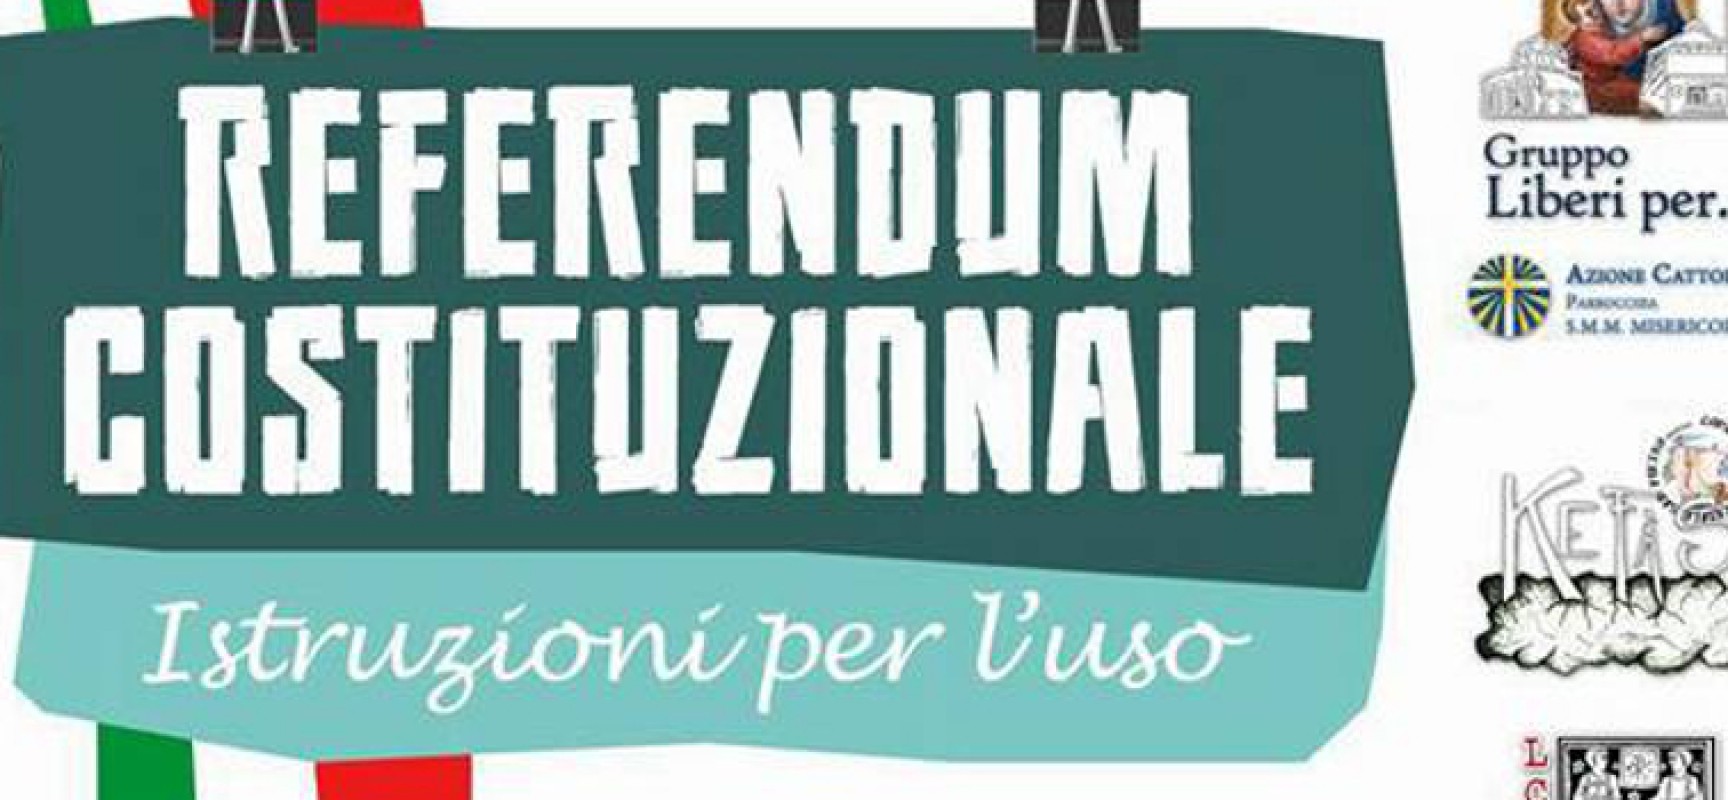 “Referendum costituzionale Istruzioni per l’uso” incontro per comprendere le ragioni del Sì e del No